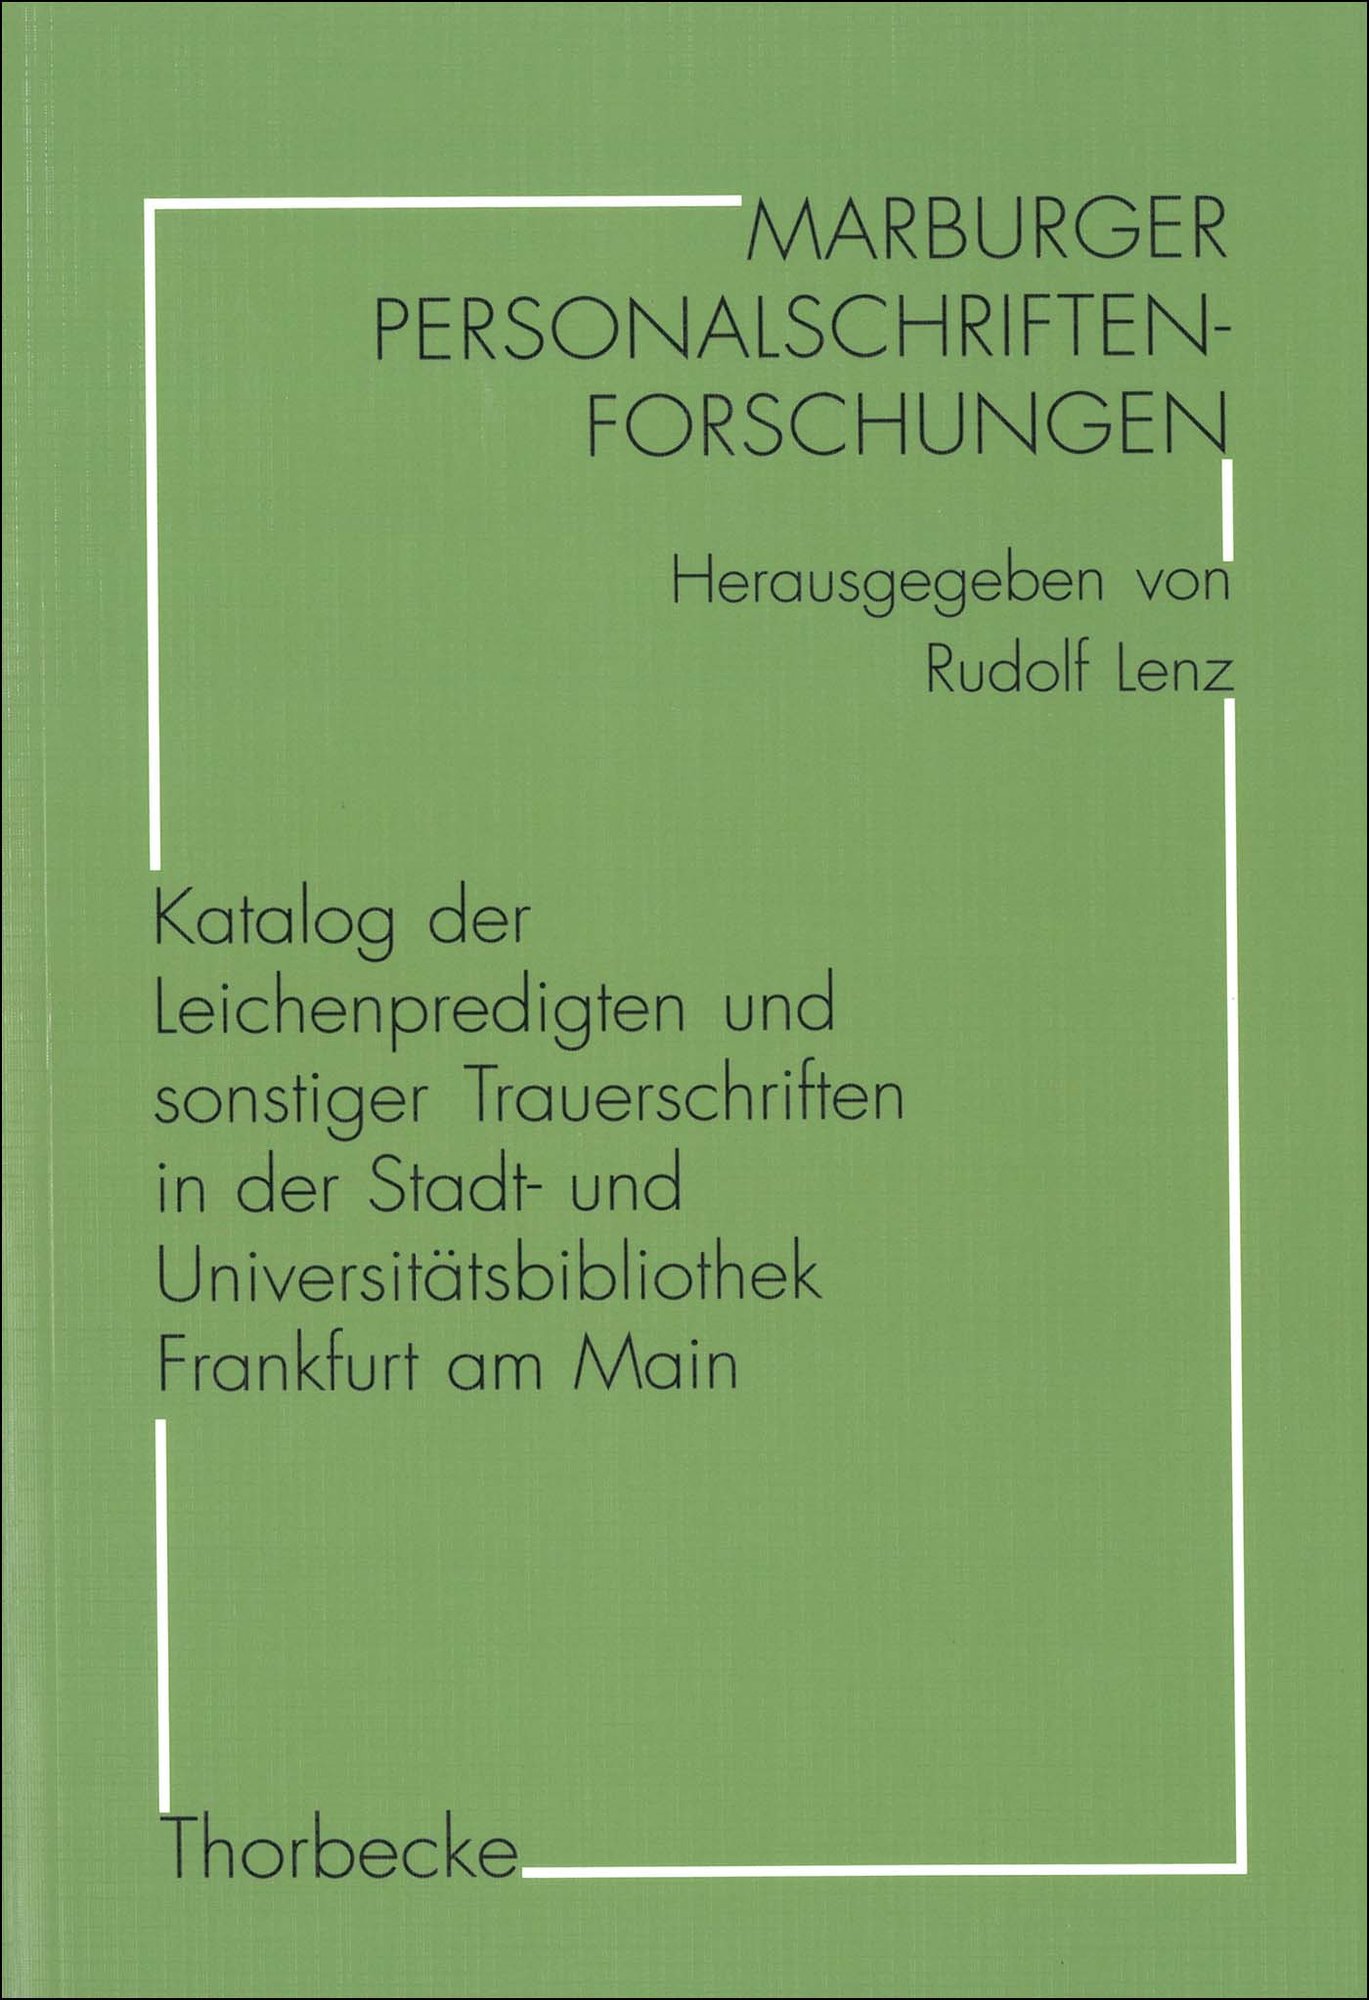 Katalog der Leichenpredigten und sonstiger Trauerschriften in der Stadt- und Universitätsbibliothek Frankfurt am Main